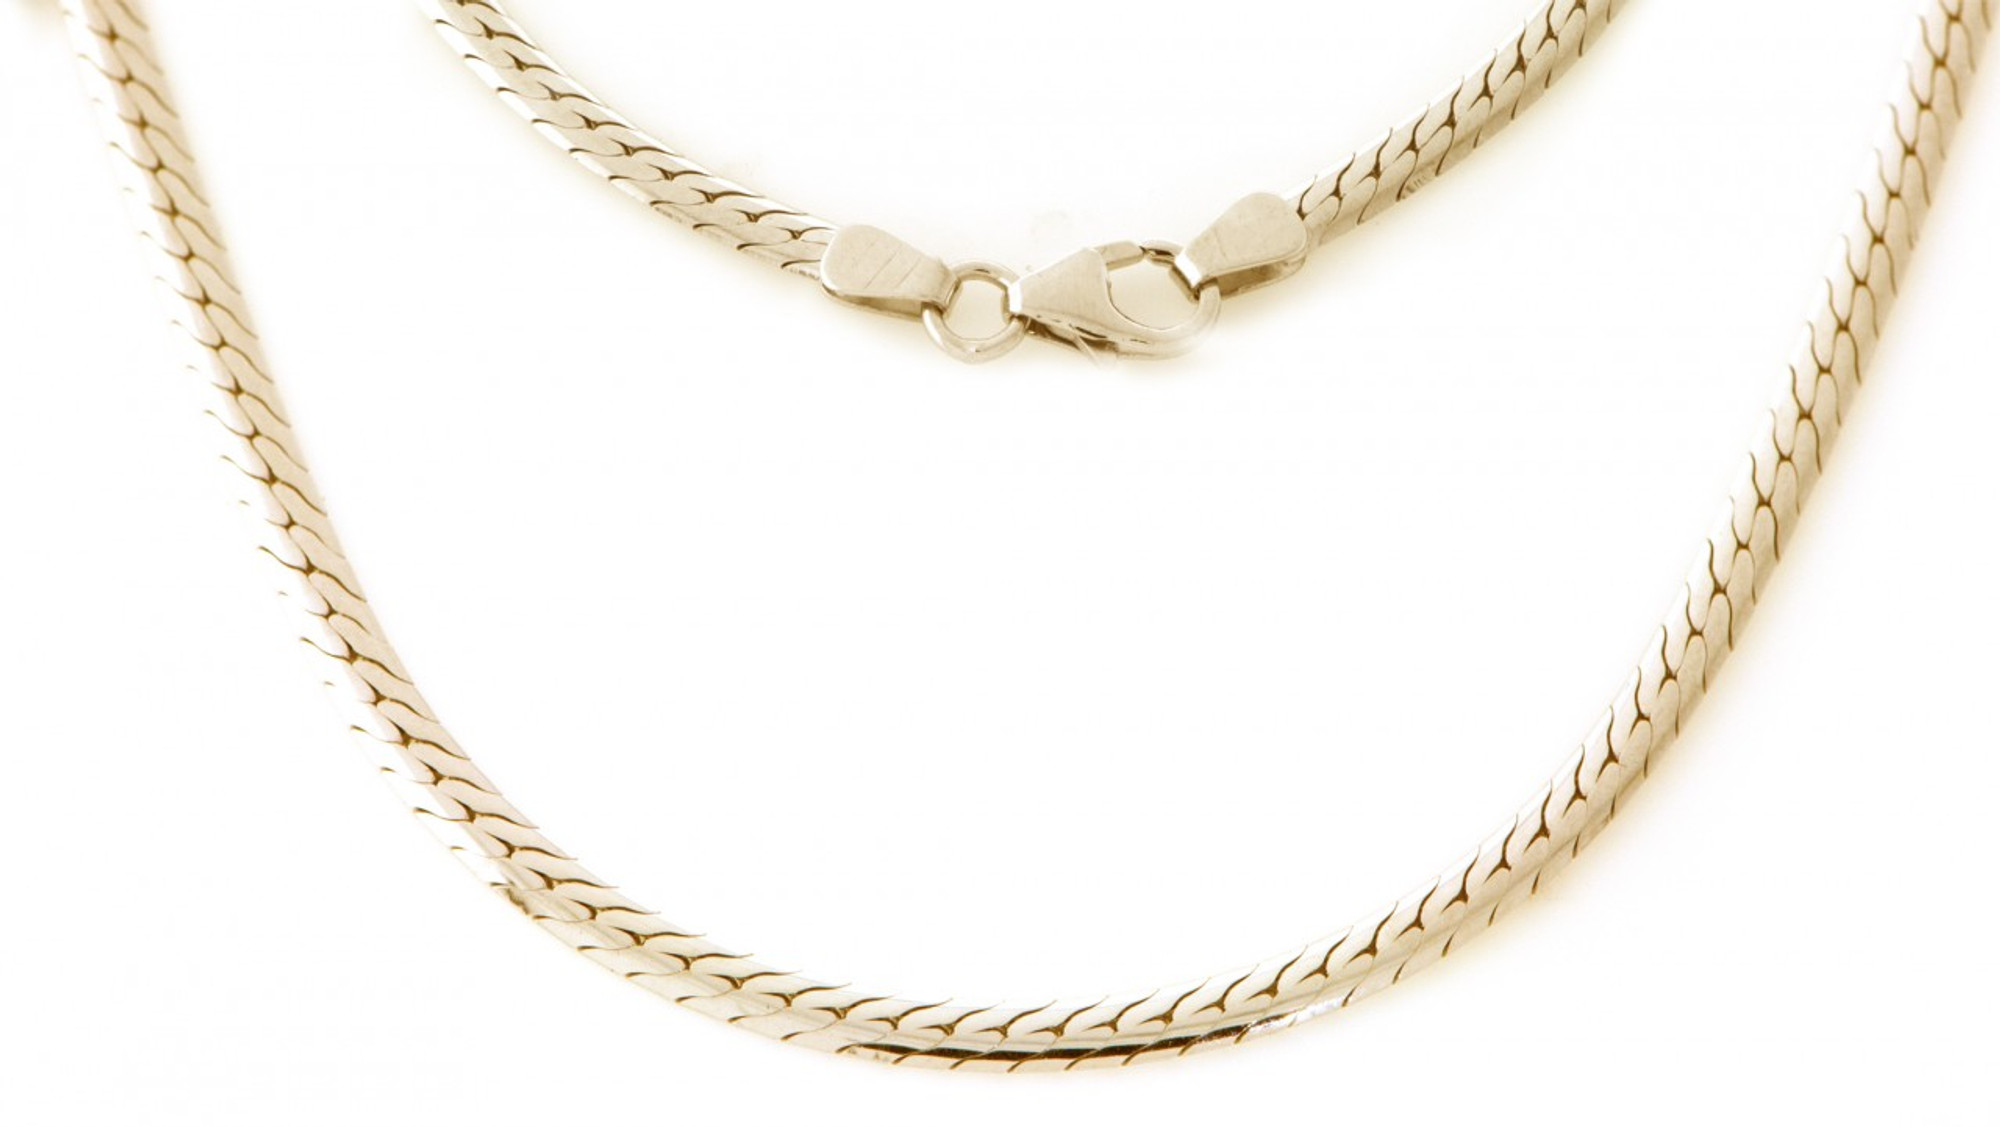 La Loop 887SH - The Silk Herringbone Chain - 24k Gold plated